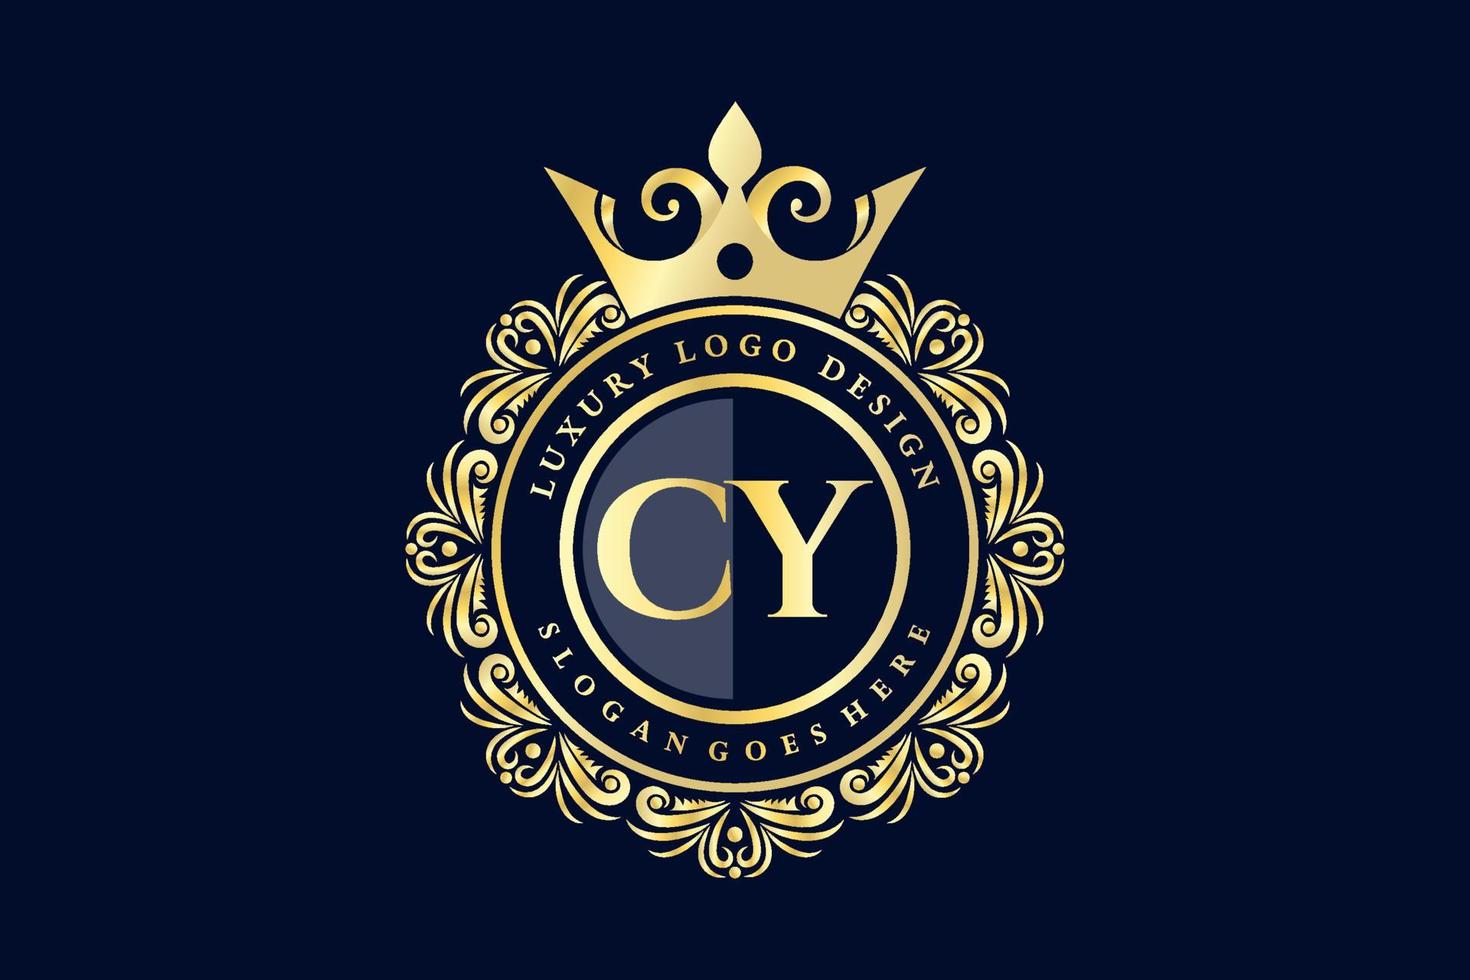 cy lettre initiale or calligraphique féminin floral monogramme héraldique dessiné à la main antique vintage style luxe logo design prime vecteur